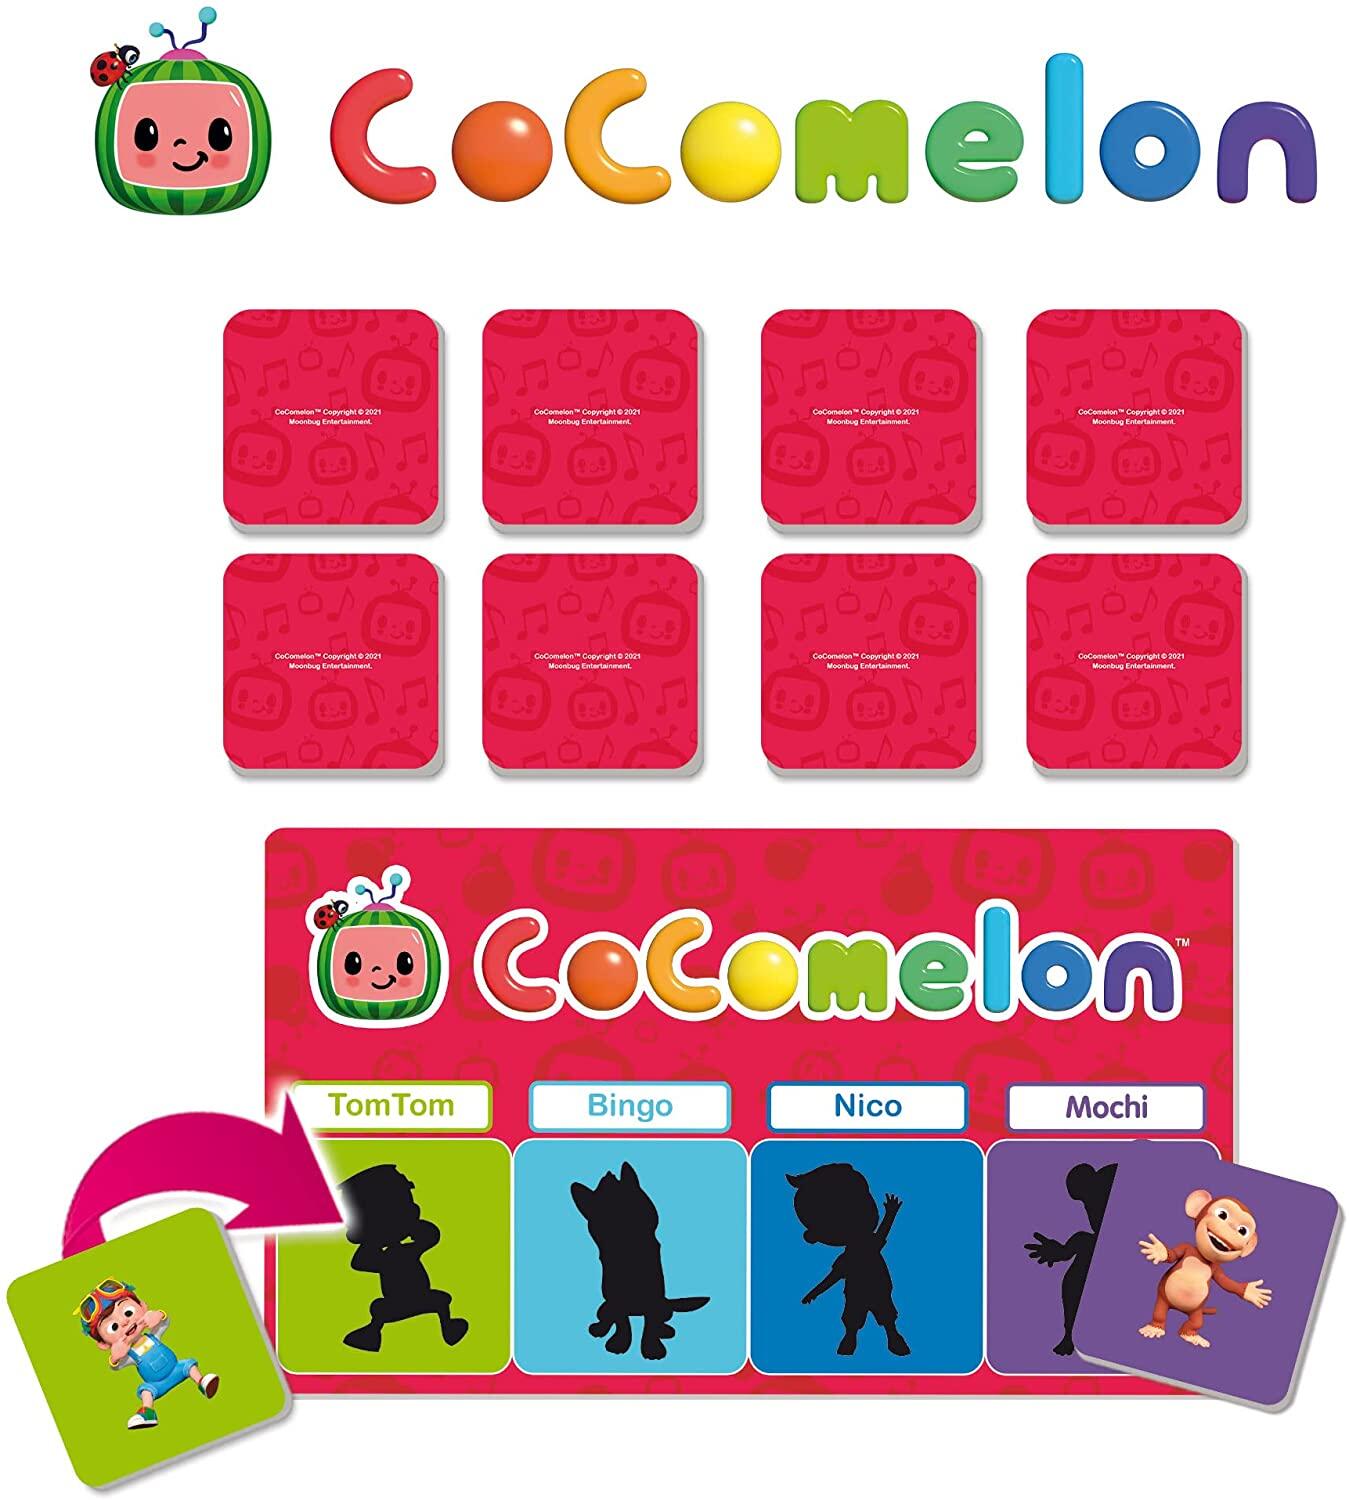 Prima mea colectie de jocuri - Cocomelon PlayLearn Toys